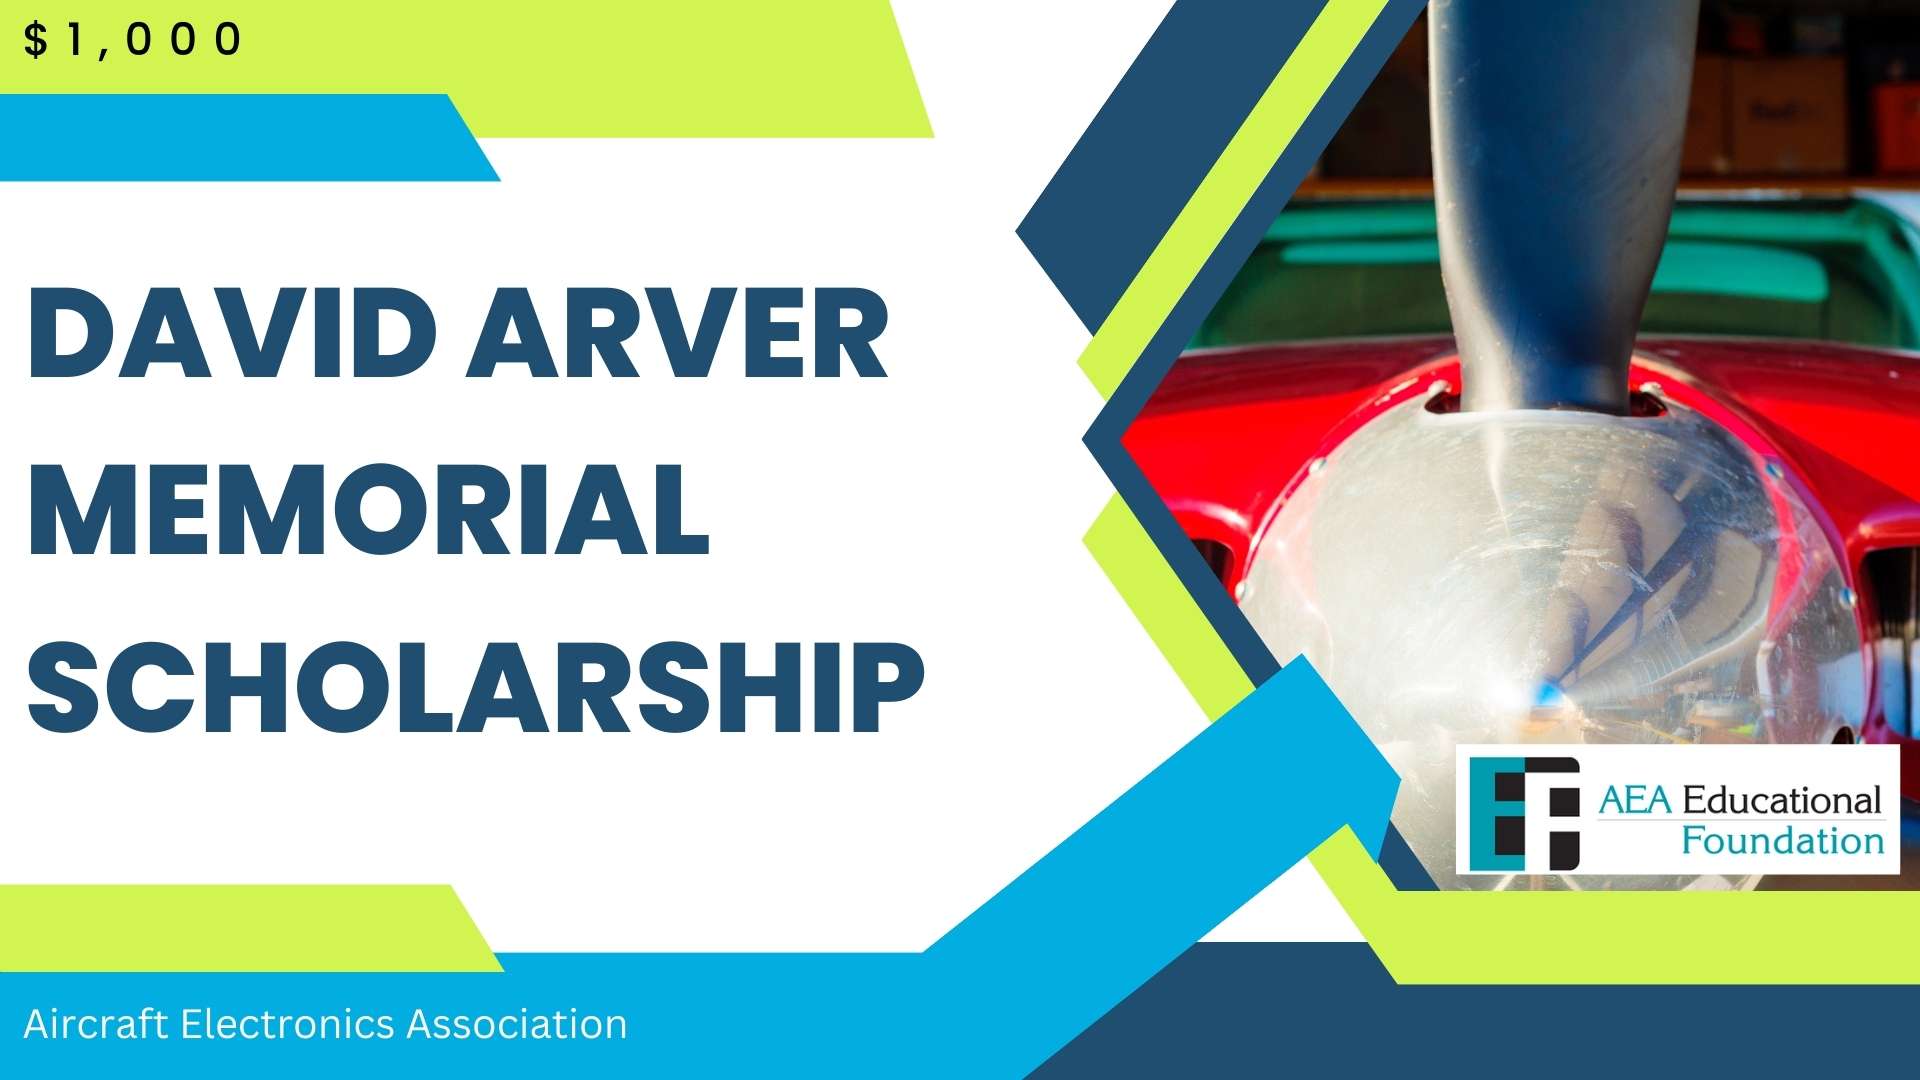 David Arver Memorial Scholarship